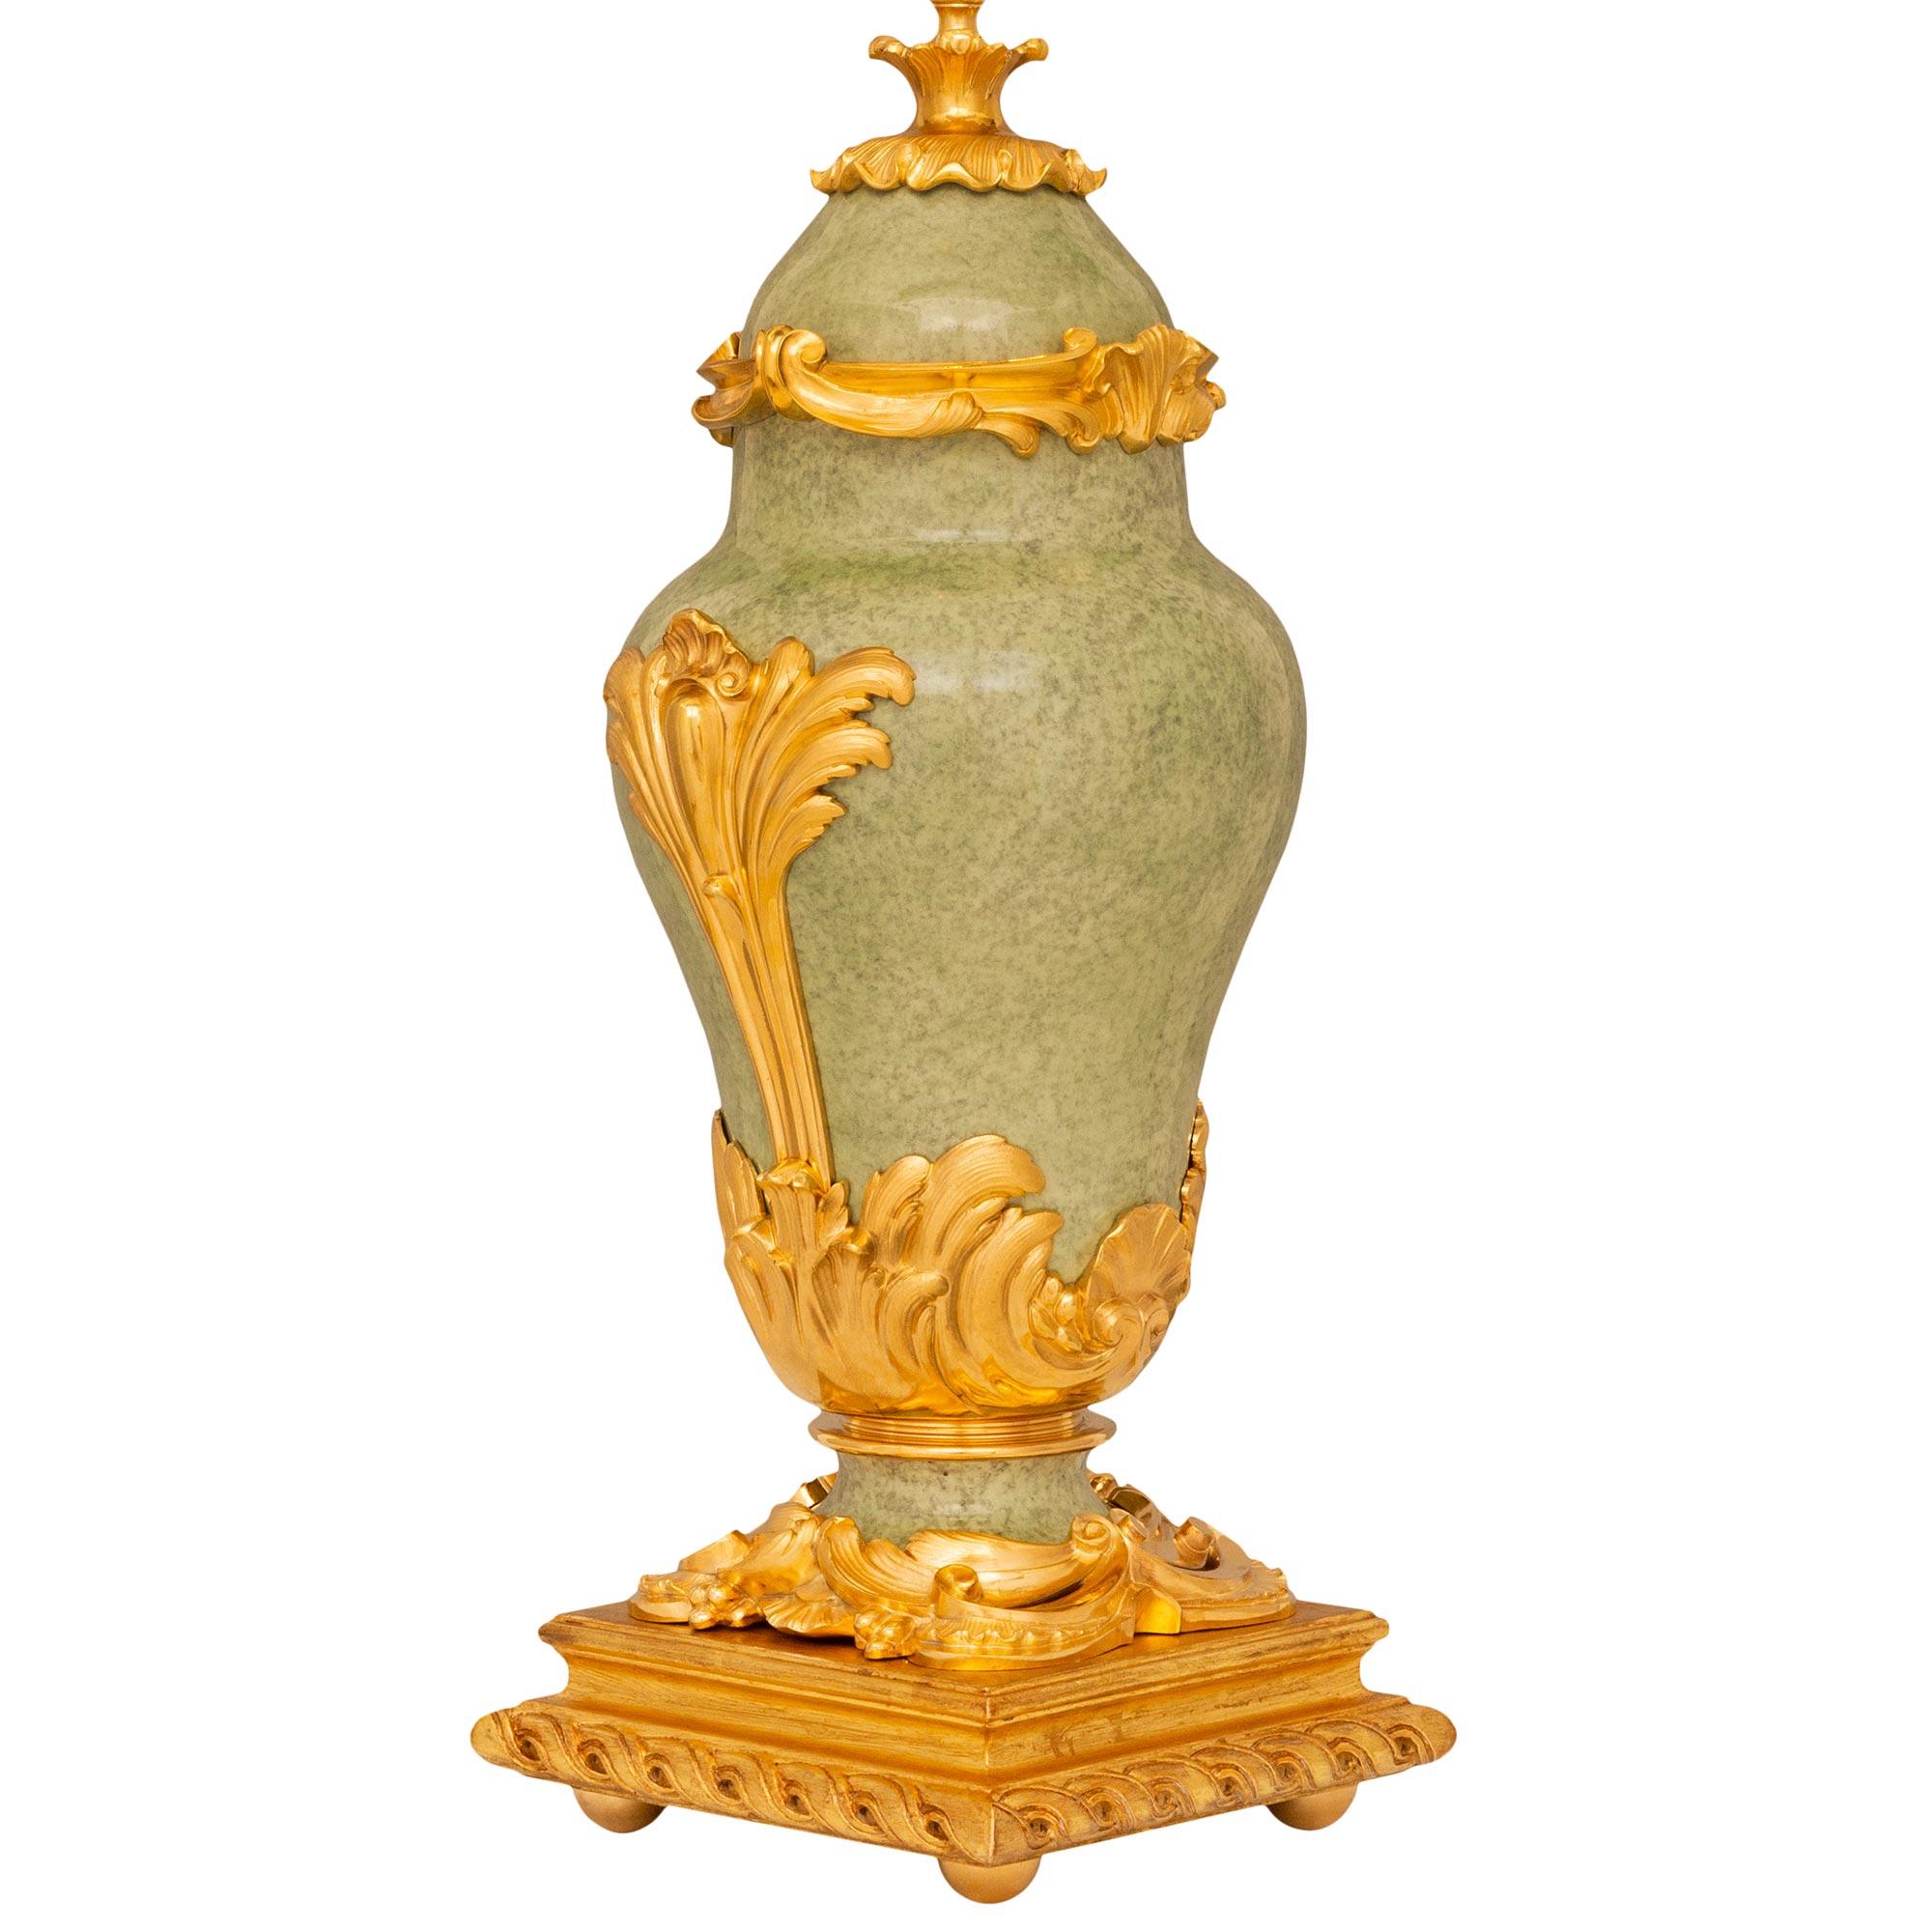 Paire de lampes en porcelaine, bronze doré et bois doré de style Louis XV du 19ème siècle. Chaque lampe est surélevée par une plate-forme carrée en bois doré avec un motif en spirale sculpté et soutenue par quatre pieds ronds en bronze doré.